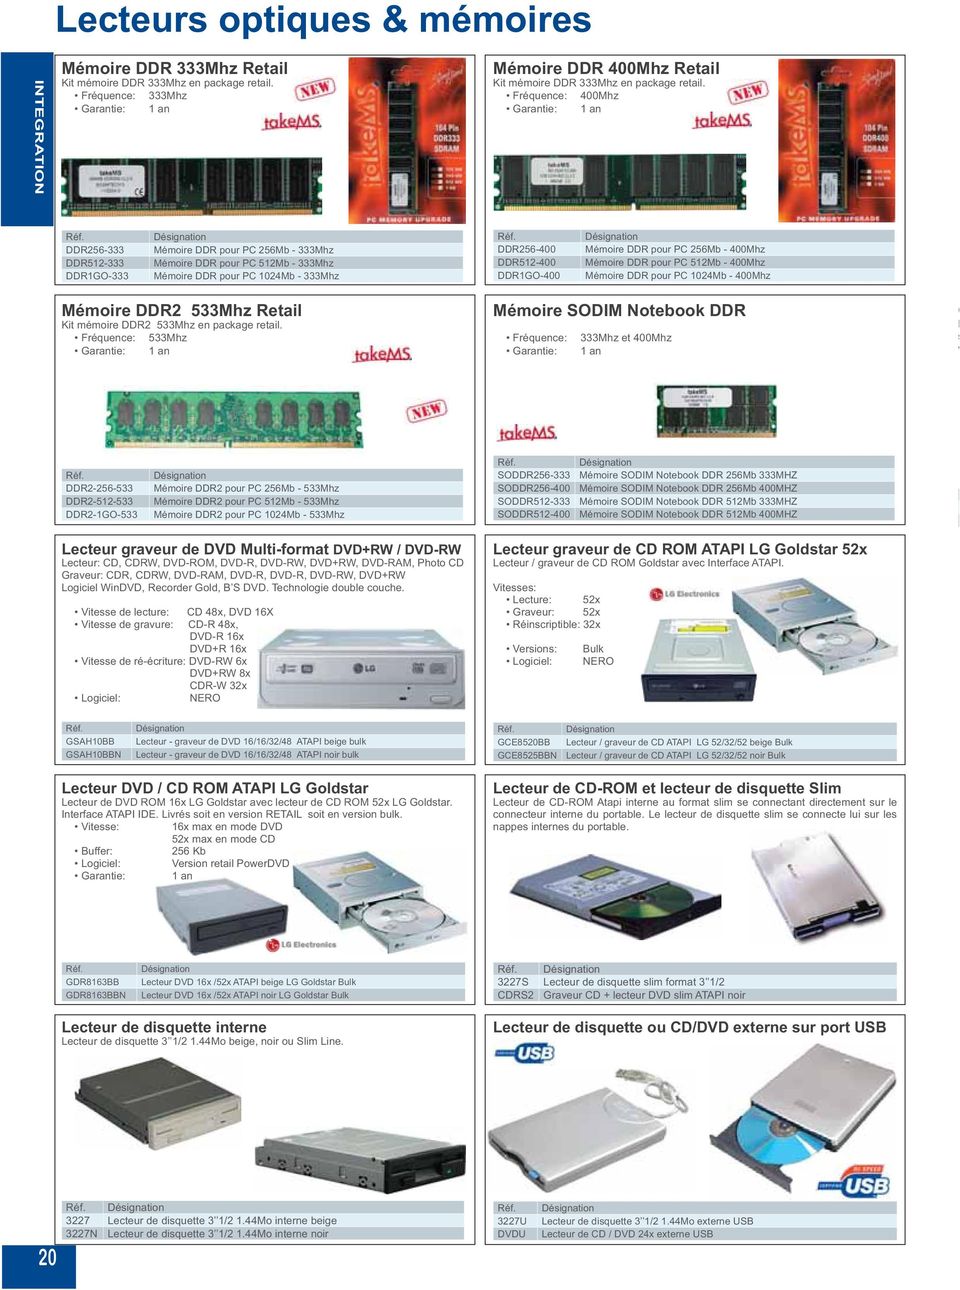 DDR pour PC 256Mb - 400Mhz Mémoire DDR pour PC 512Mb - 400Mhz Mémoire DDR pour PC 1024Mb - 400Mhz Mémoire DDR2 533Mhz Retail Kit mémoire DDR2 533Mhz en package retail.